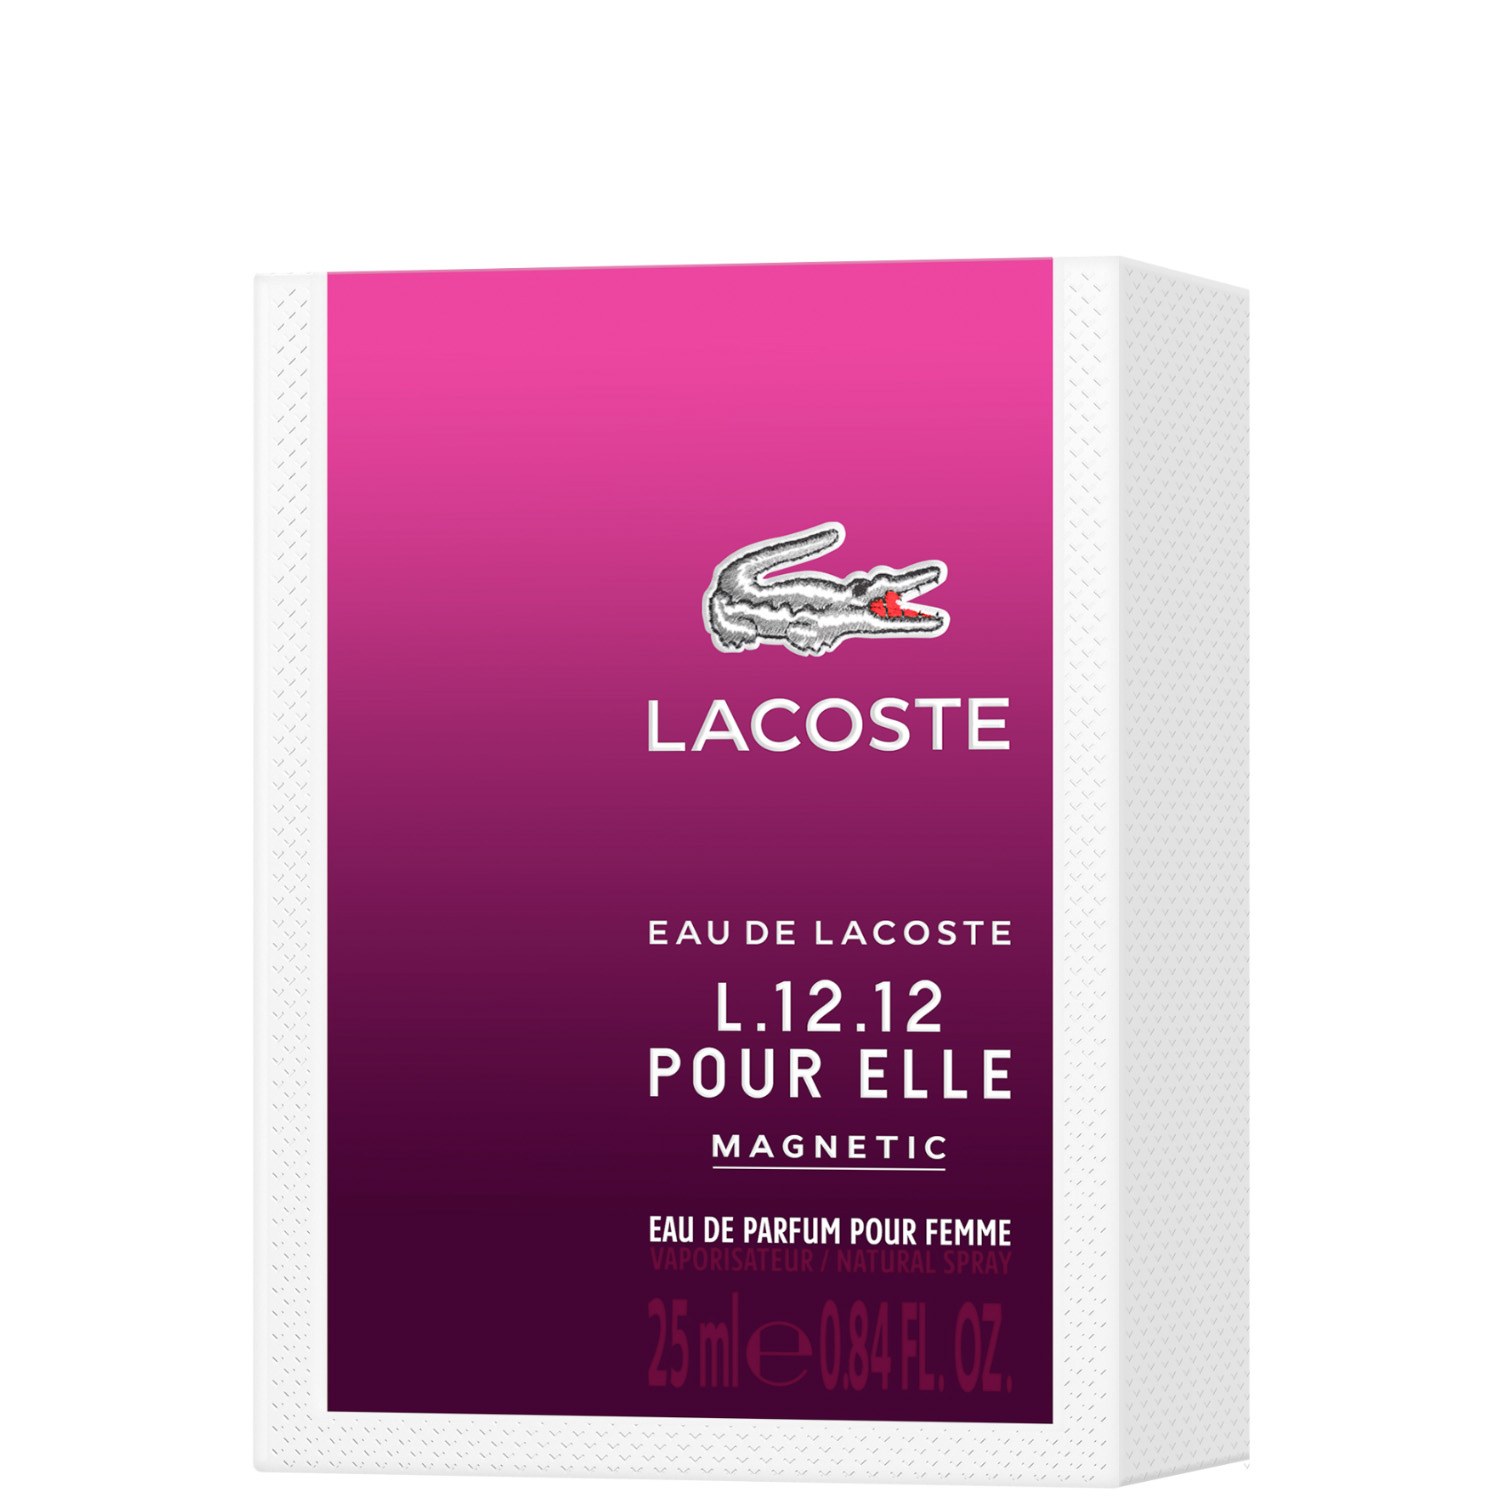 Lacoste Eau de Lacoste L.12.12 Pour Elle Magnetic Eau de Parfum 25ml